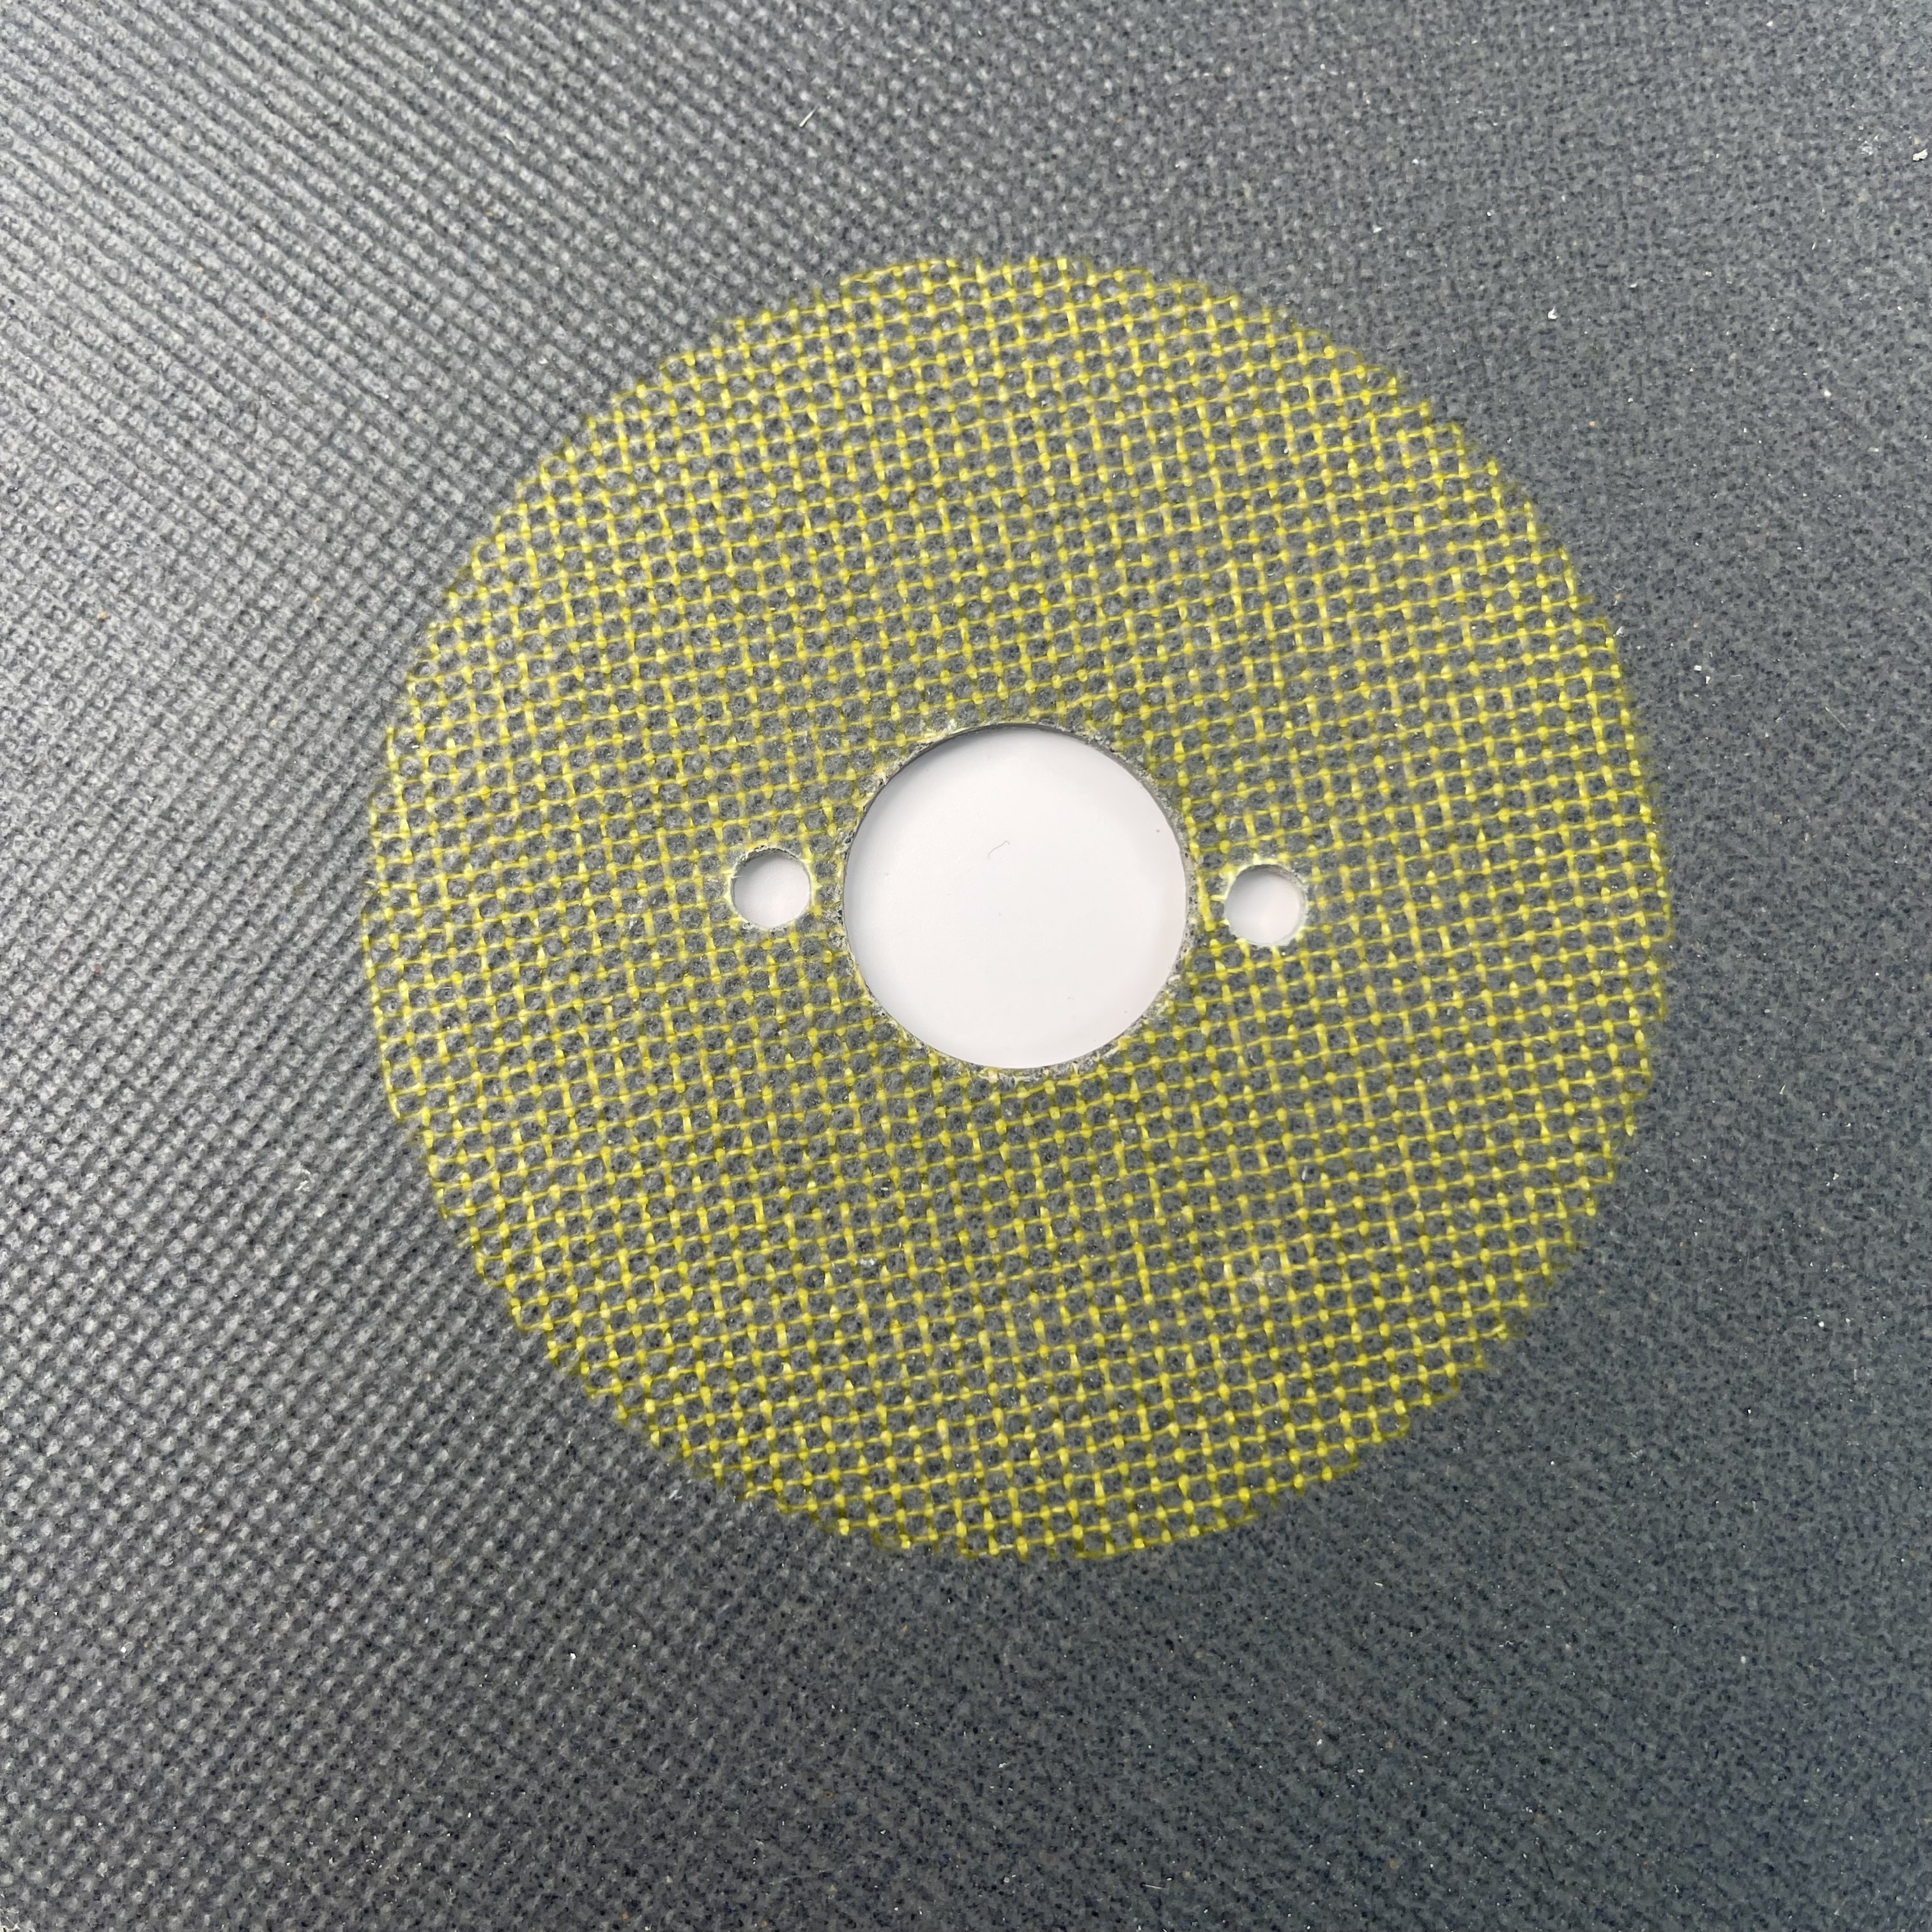 Tipo 1 roda de acabamento de solda a laser macia 8 pol. X 4,2 mm x 1 pol. para alumínio